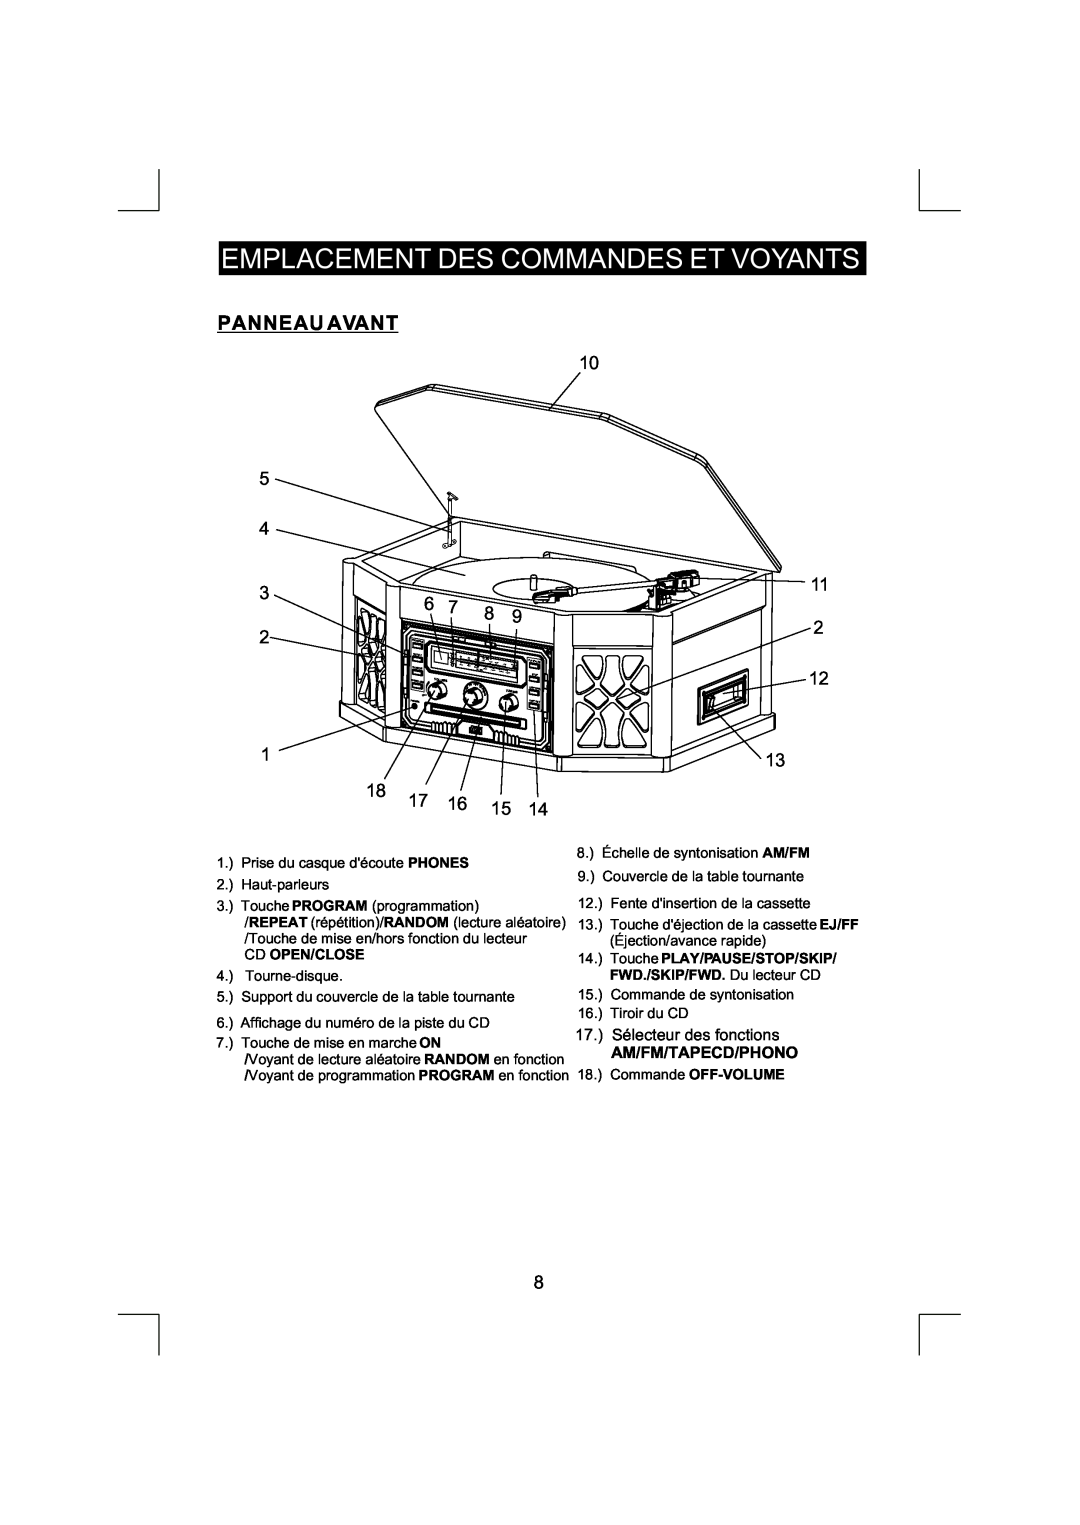 Emerson NR290TTC owner manual Panneau Avant, Emplacement Des Commandes Et Voyants, Am/Fm/Tapecd/Phono, Cd Open/Close 